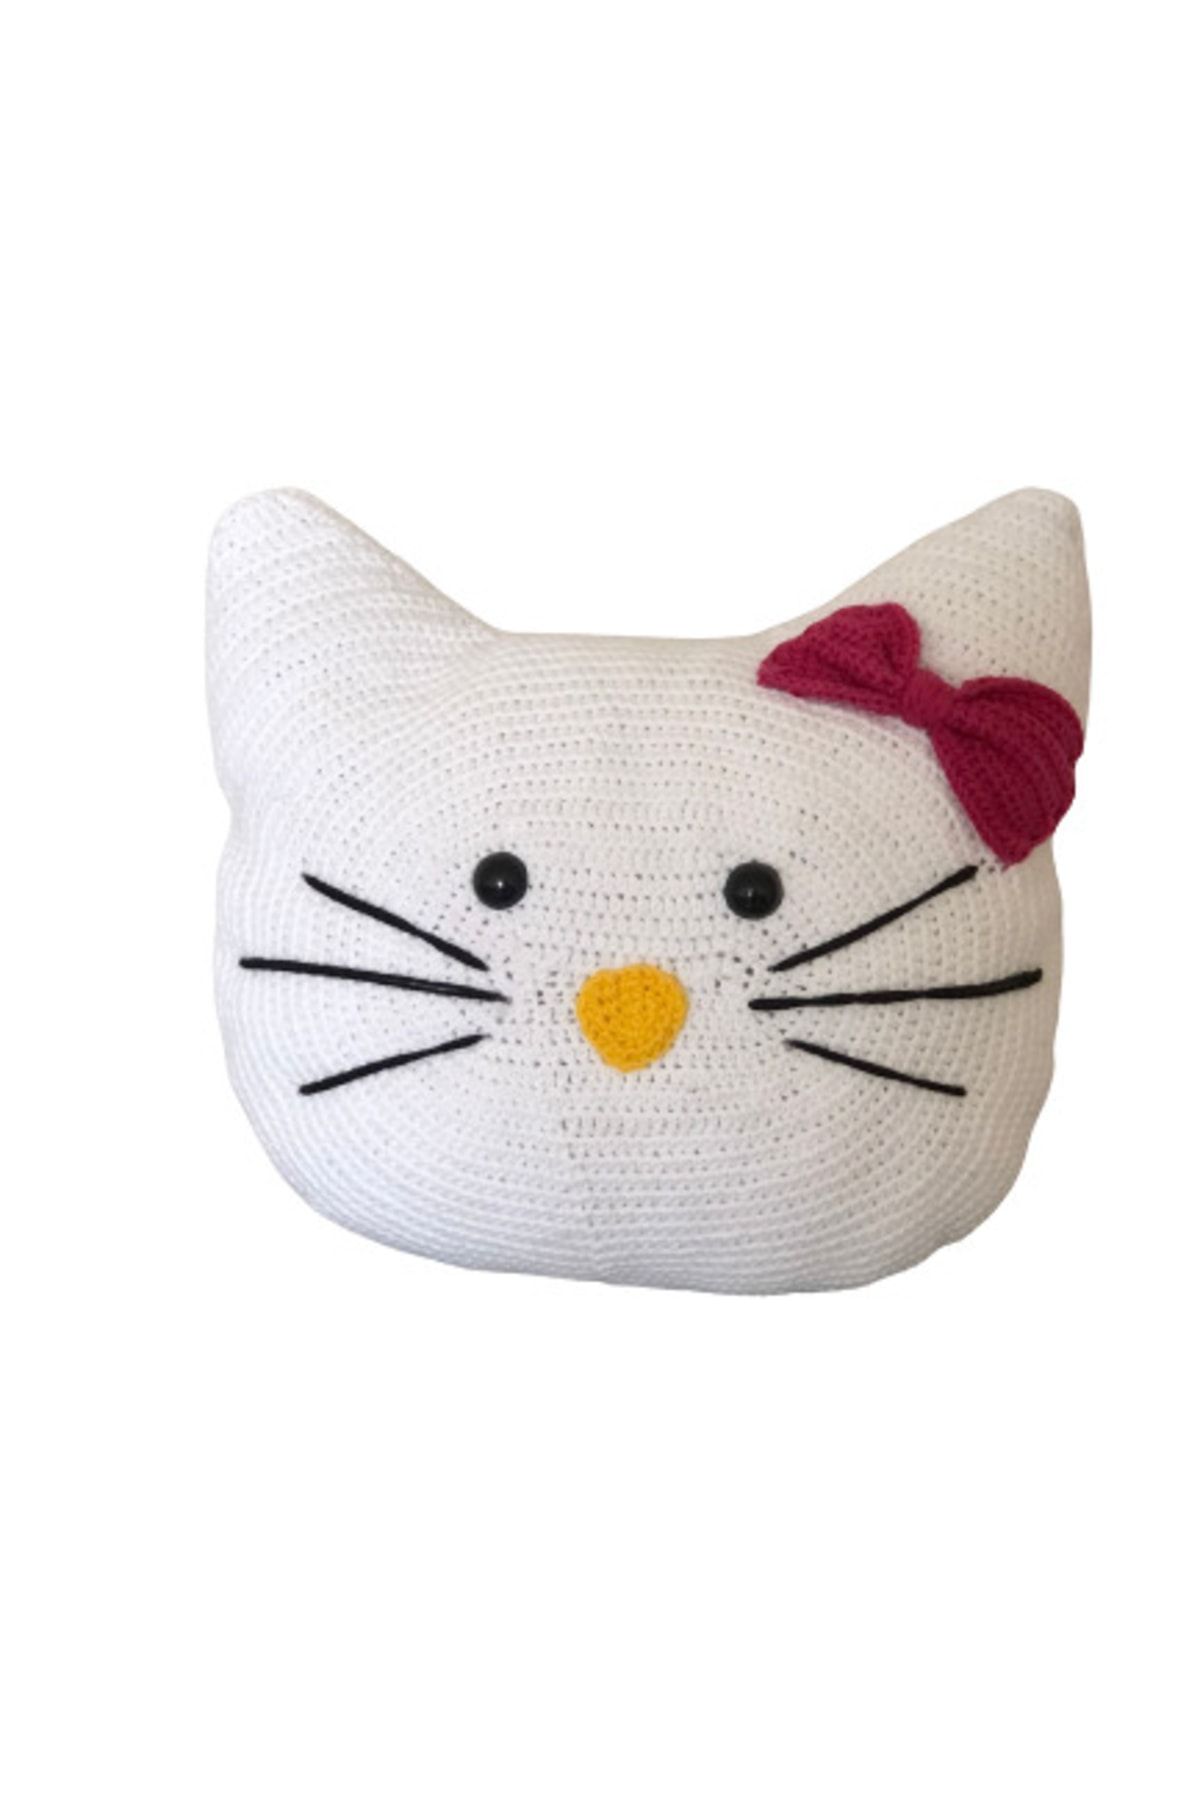 Feel & Art Hello Kitty Amigurumi Organik Kırlent